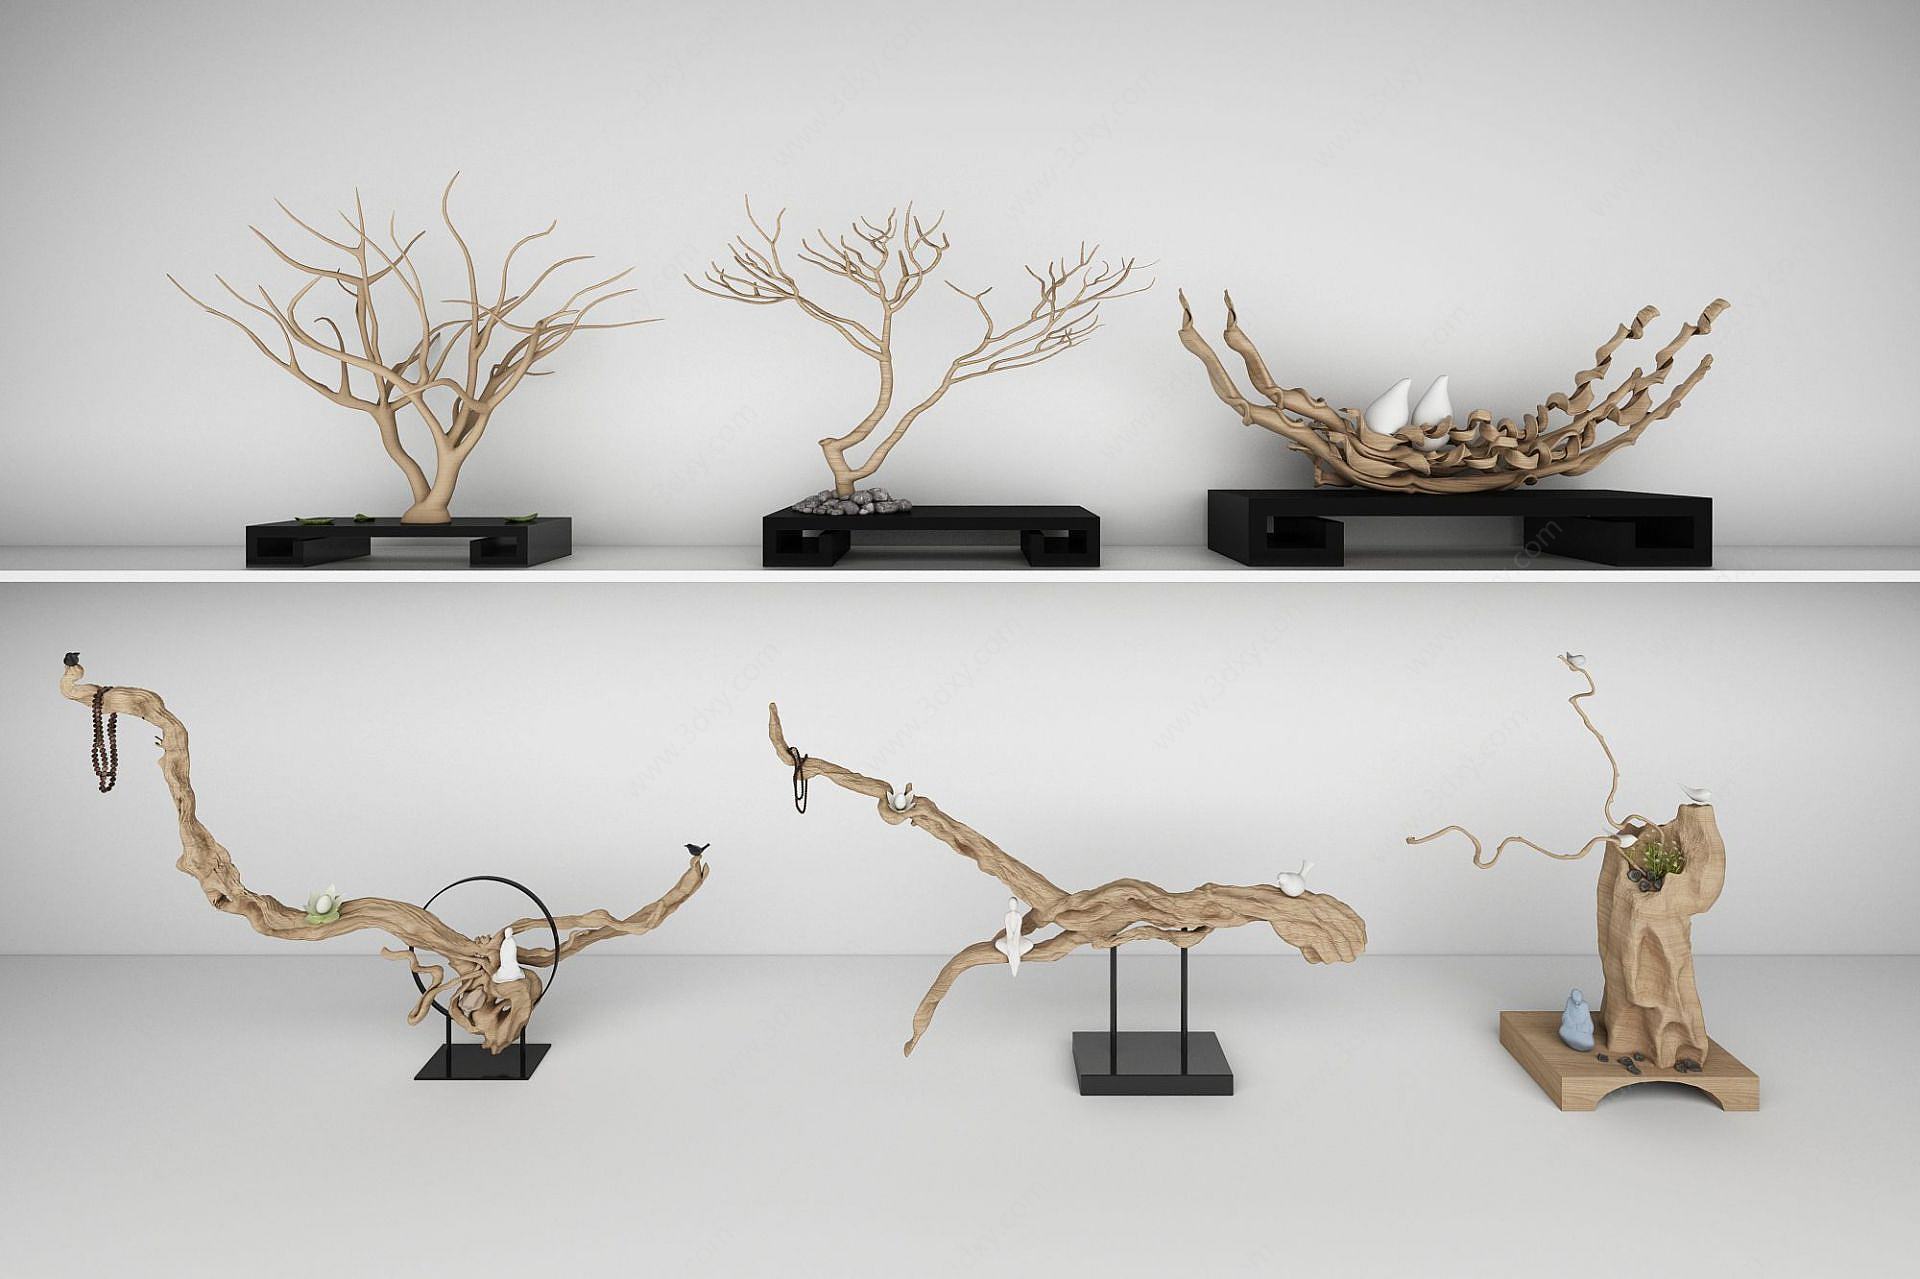 木雕树根根雕样品展示3D模型